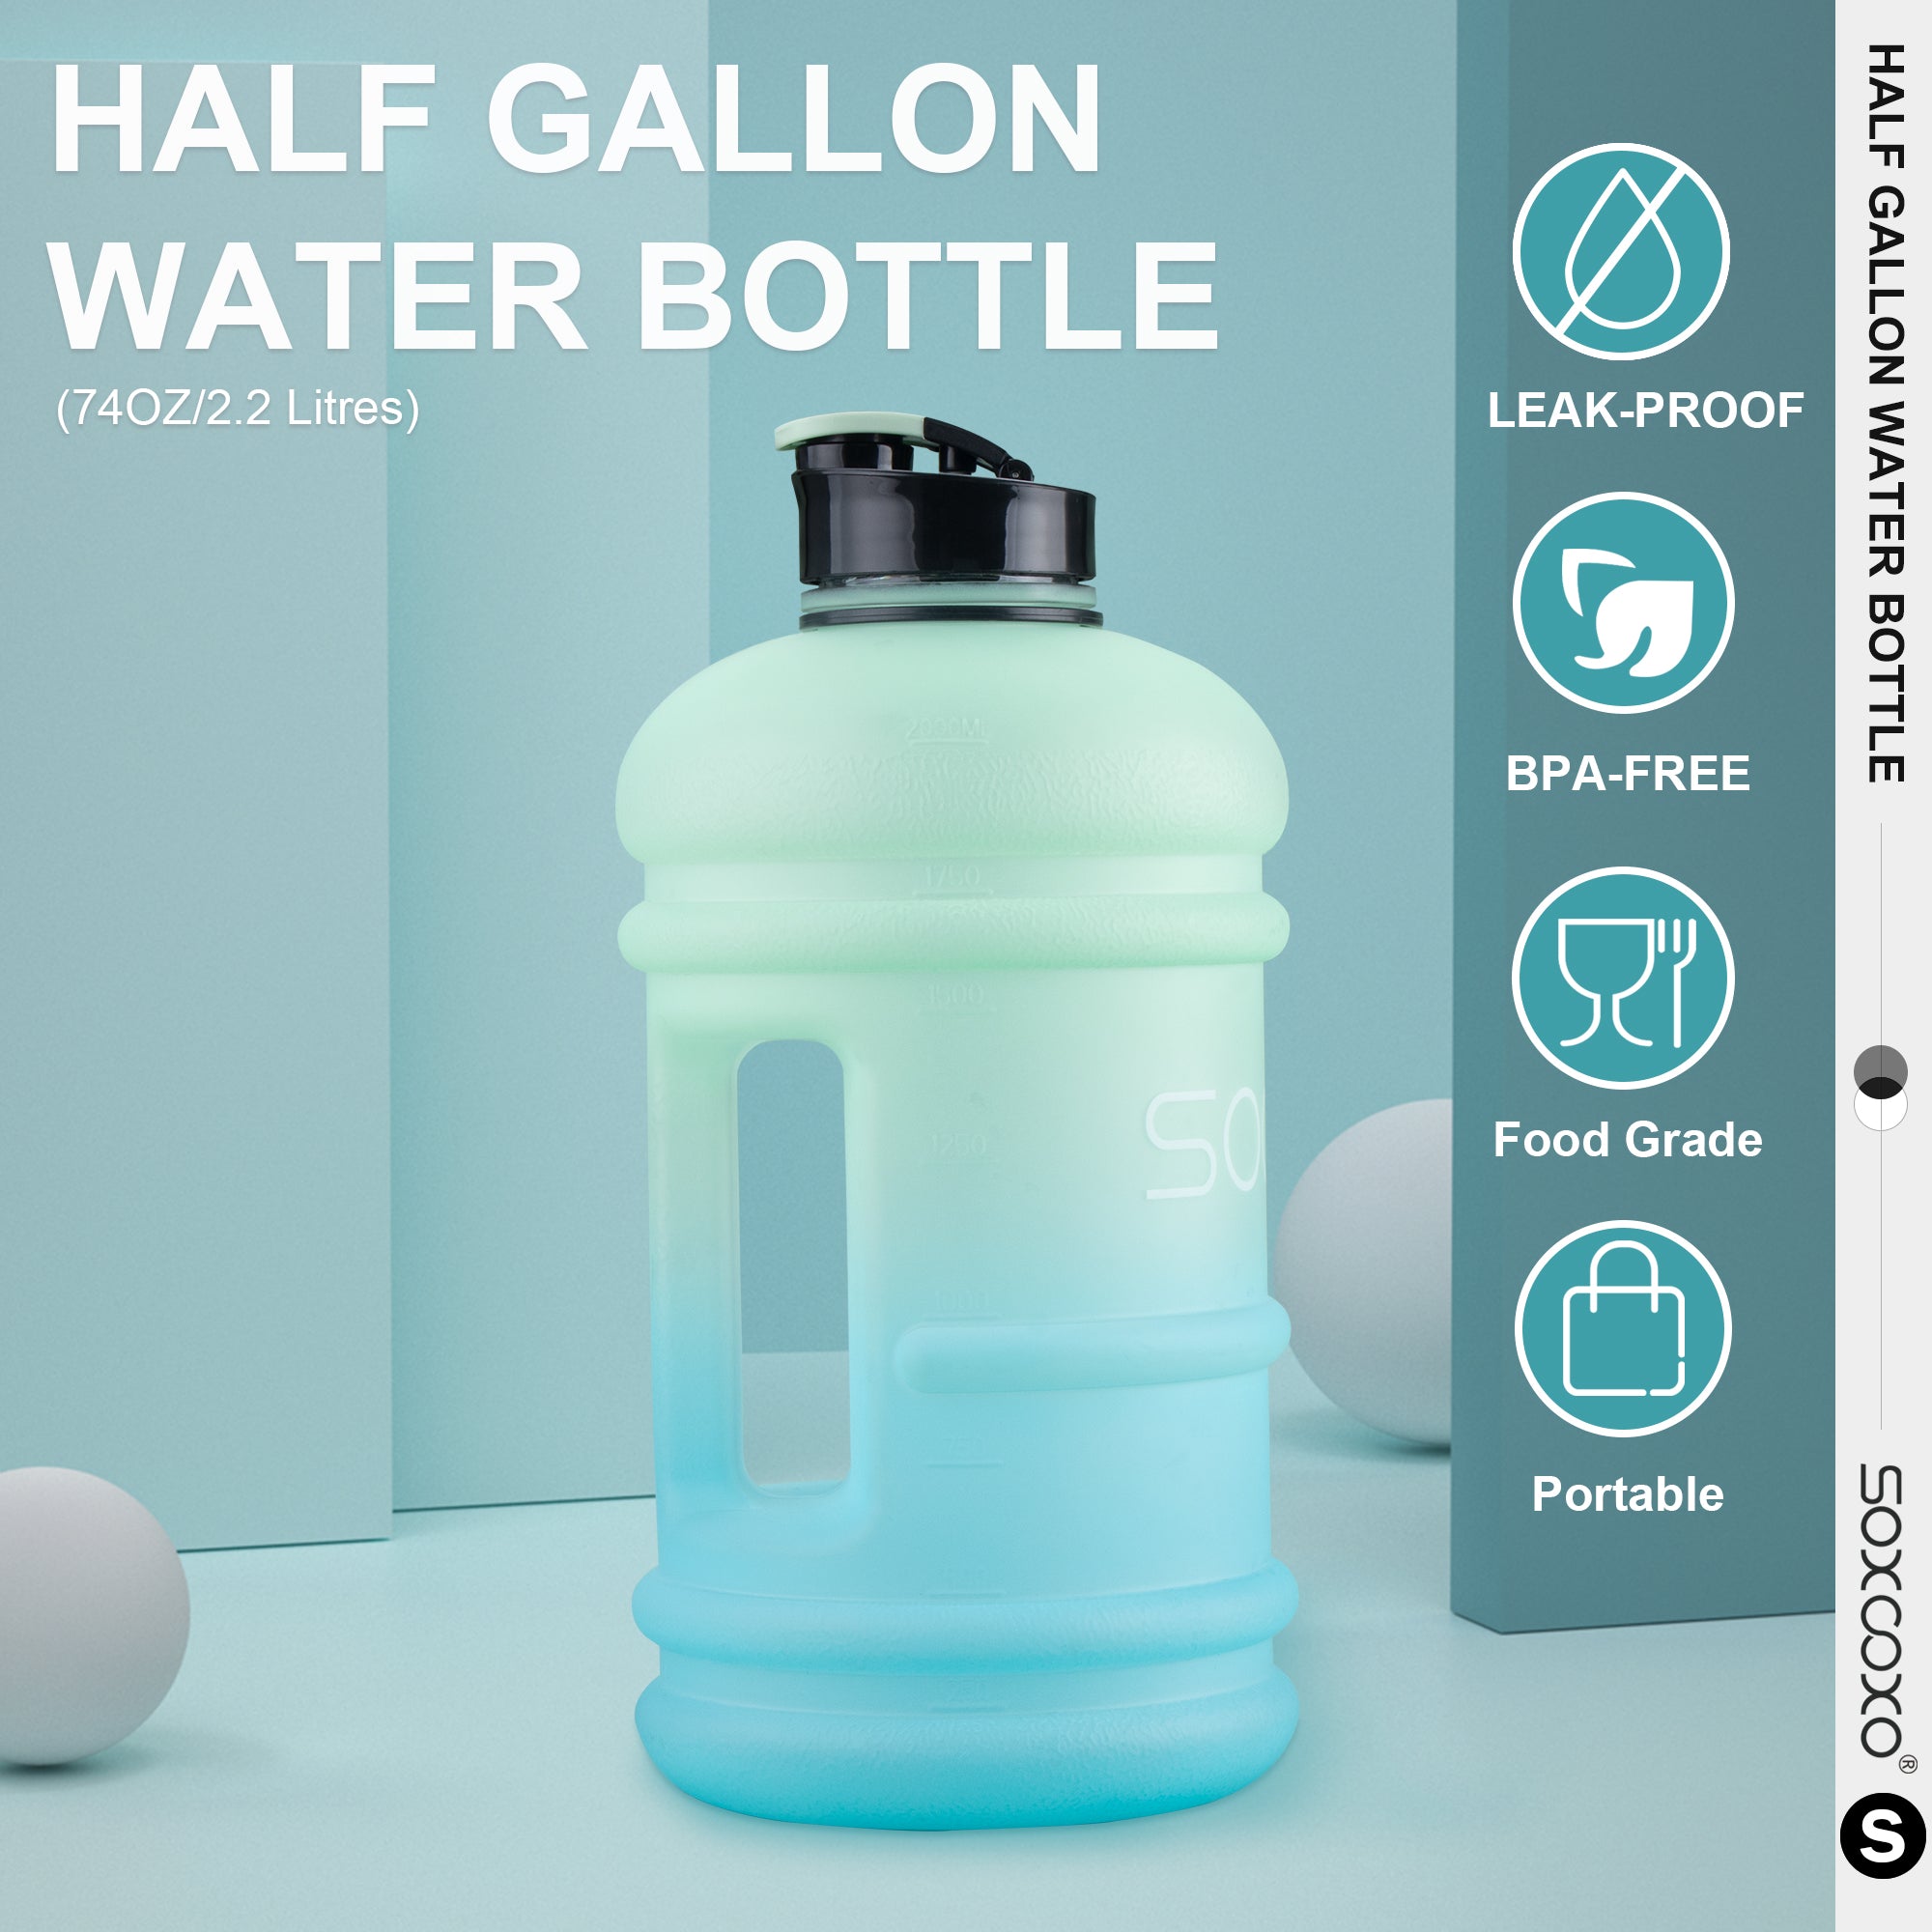 Half Gallon Water Bottle,Large Water Bottle 74 Oz Water Bottle